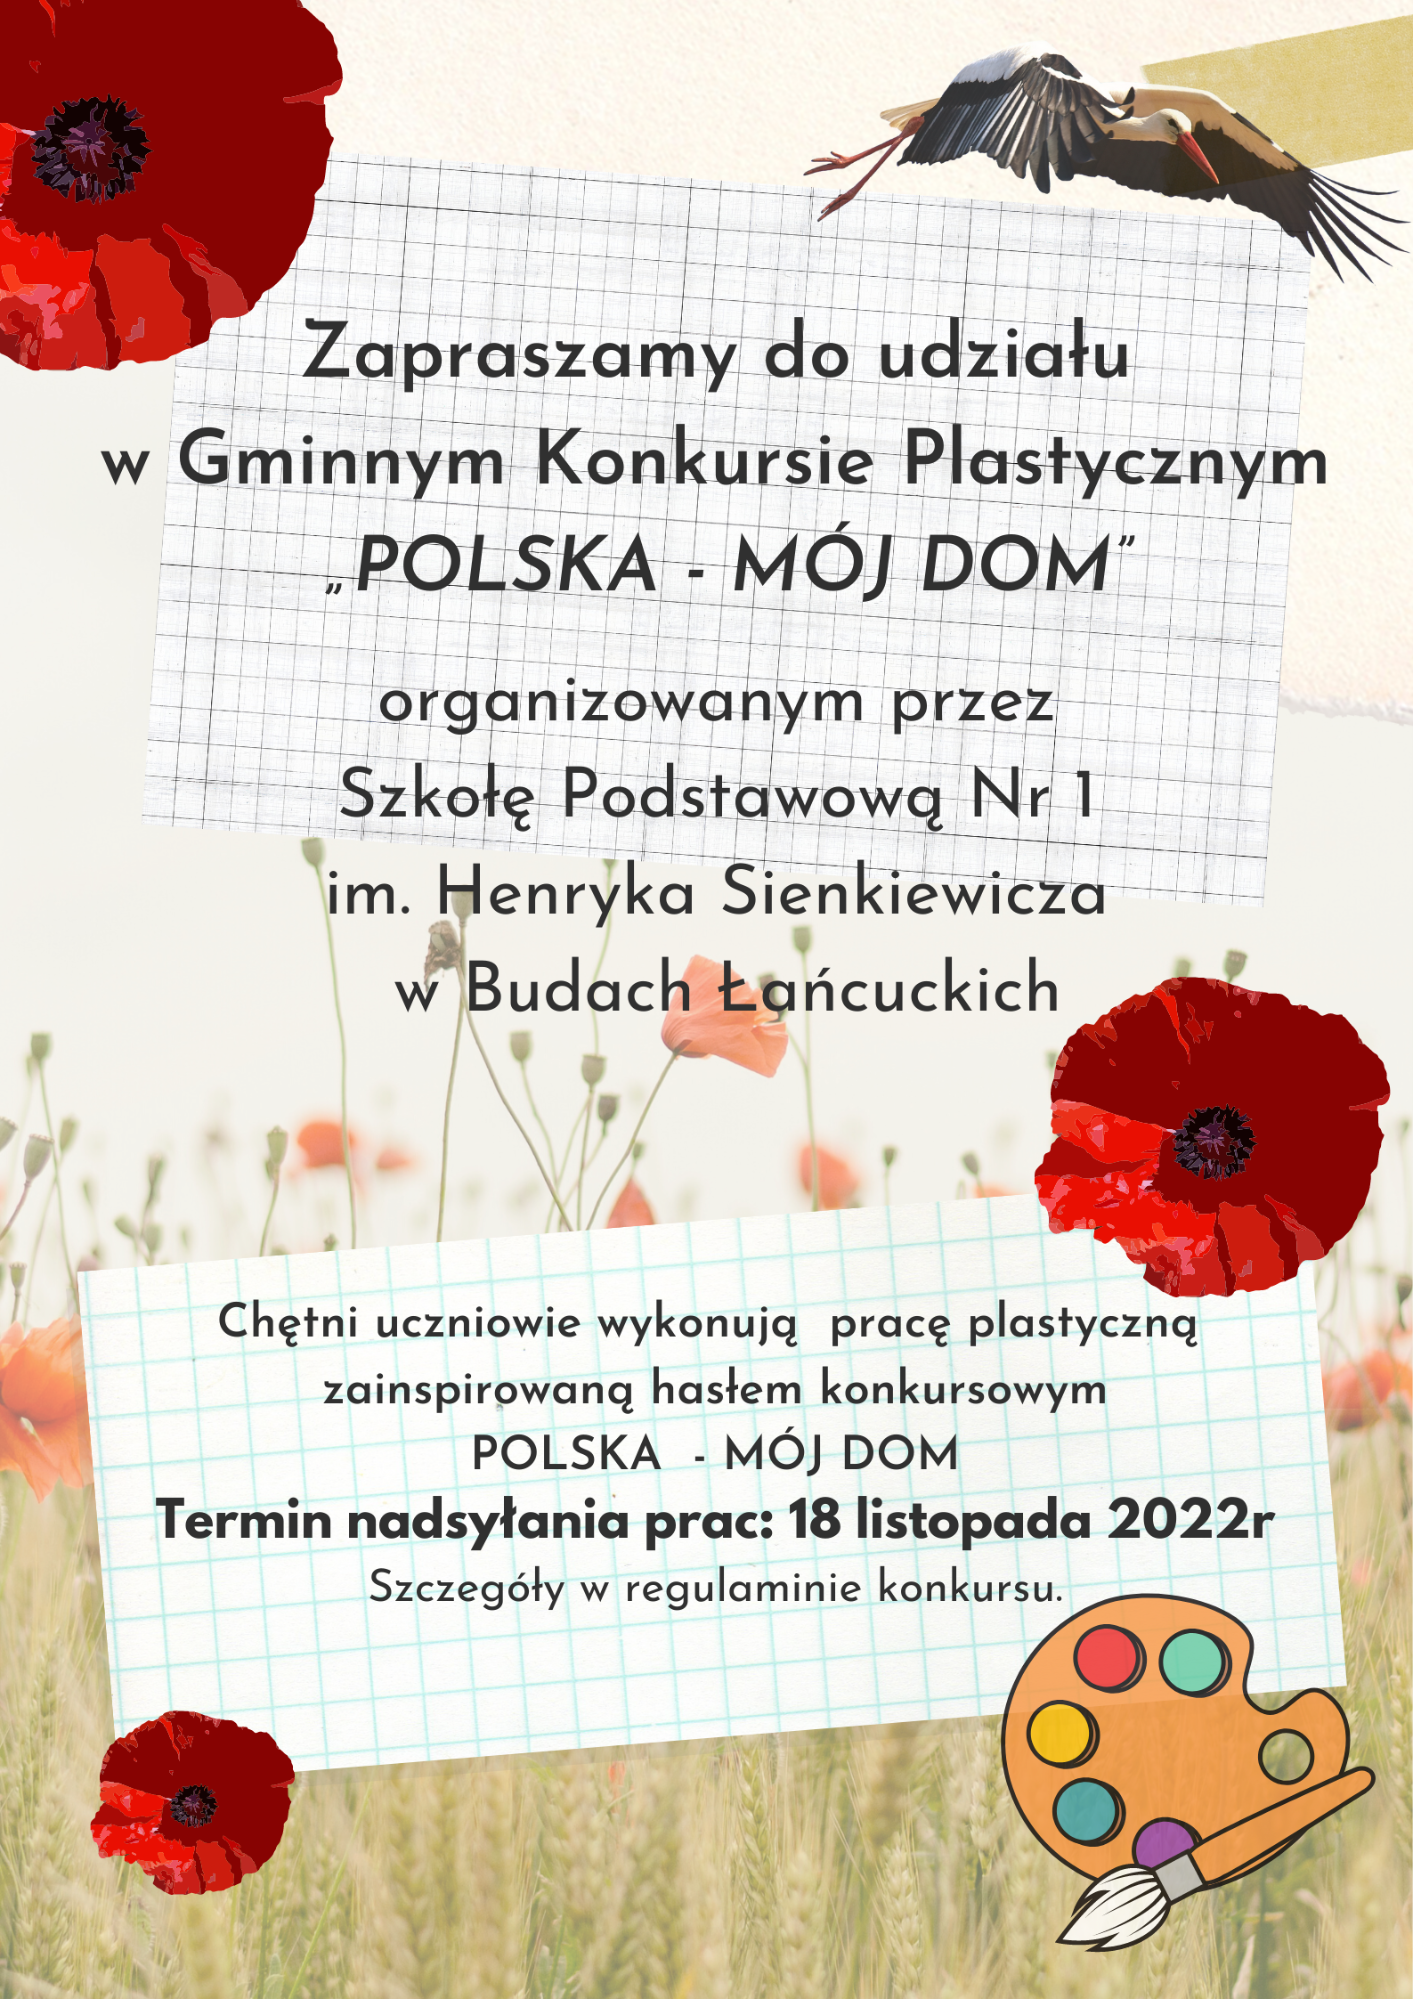 Gminny Konkurs Plastyczny "Polska - Mój Dom" - Obrazek 1